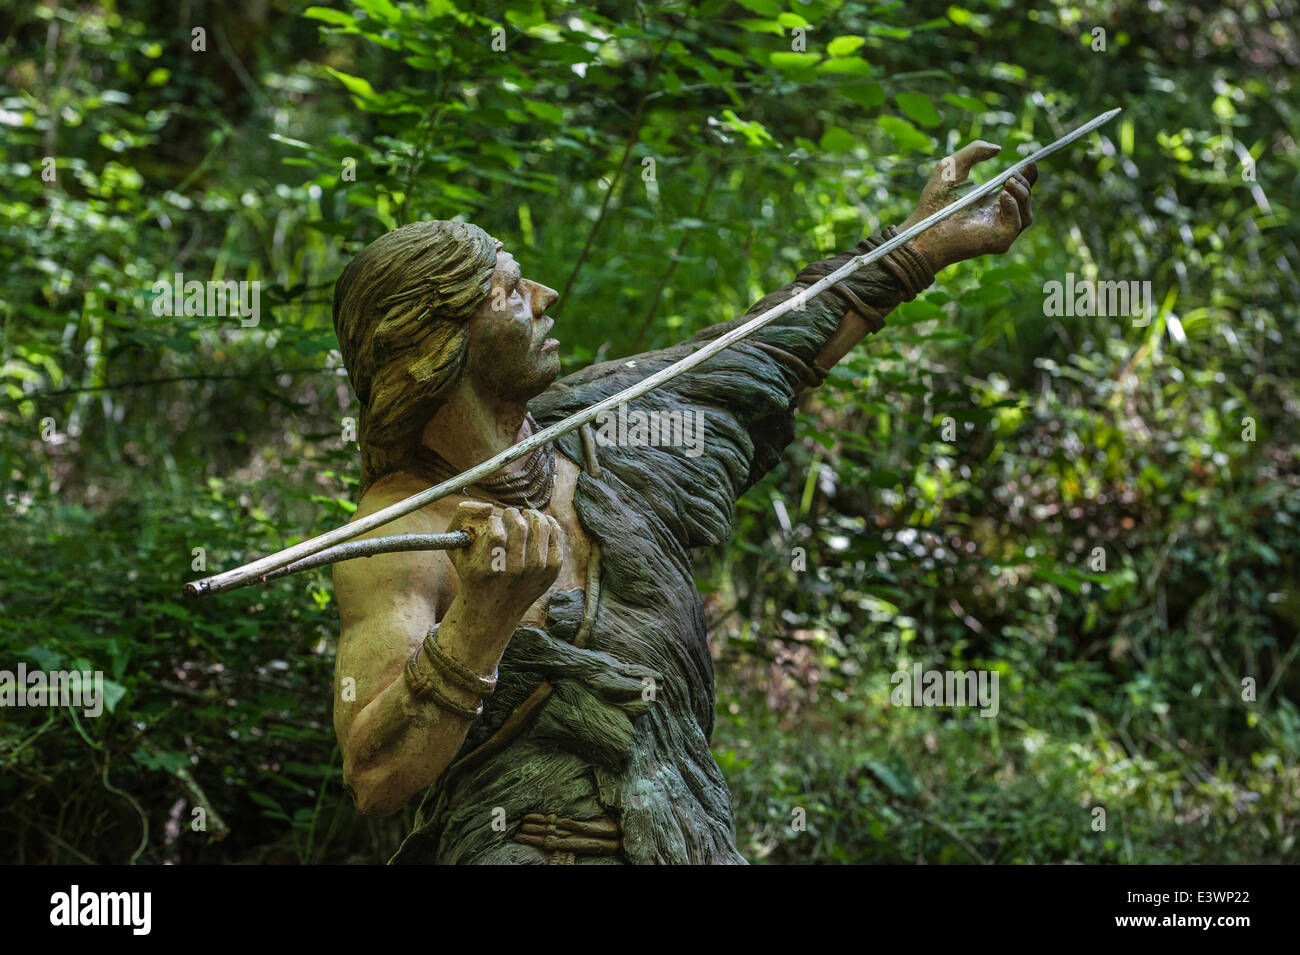 Cro-magnon hunter gettando lancia con aiuto di spear-thrower / atlatl, Prehisto Parc, Tursac, Périgord e Dordogna, Francia Foto Stock